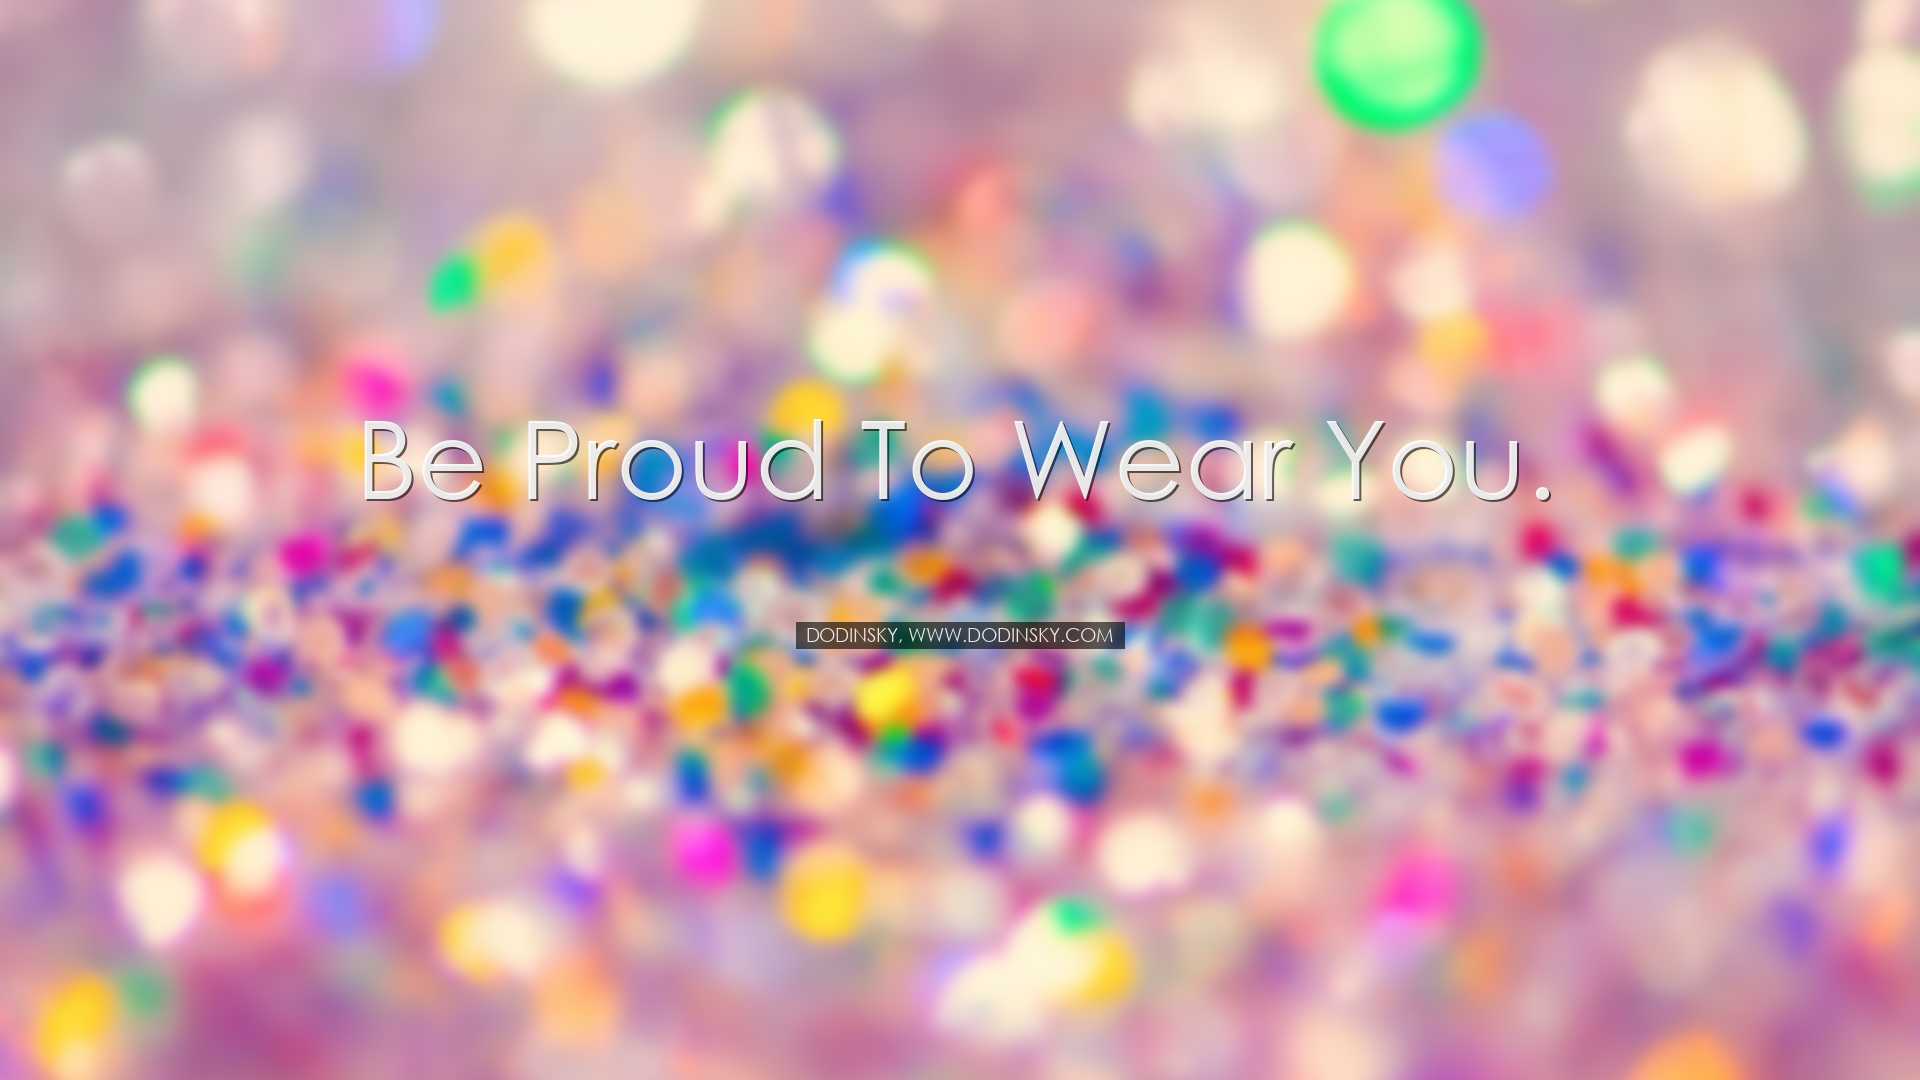 Be proud to wear you. - Dodinsky, www.dodinsky.com